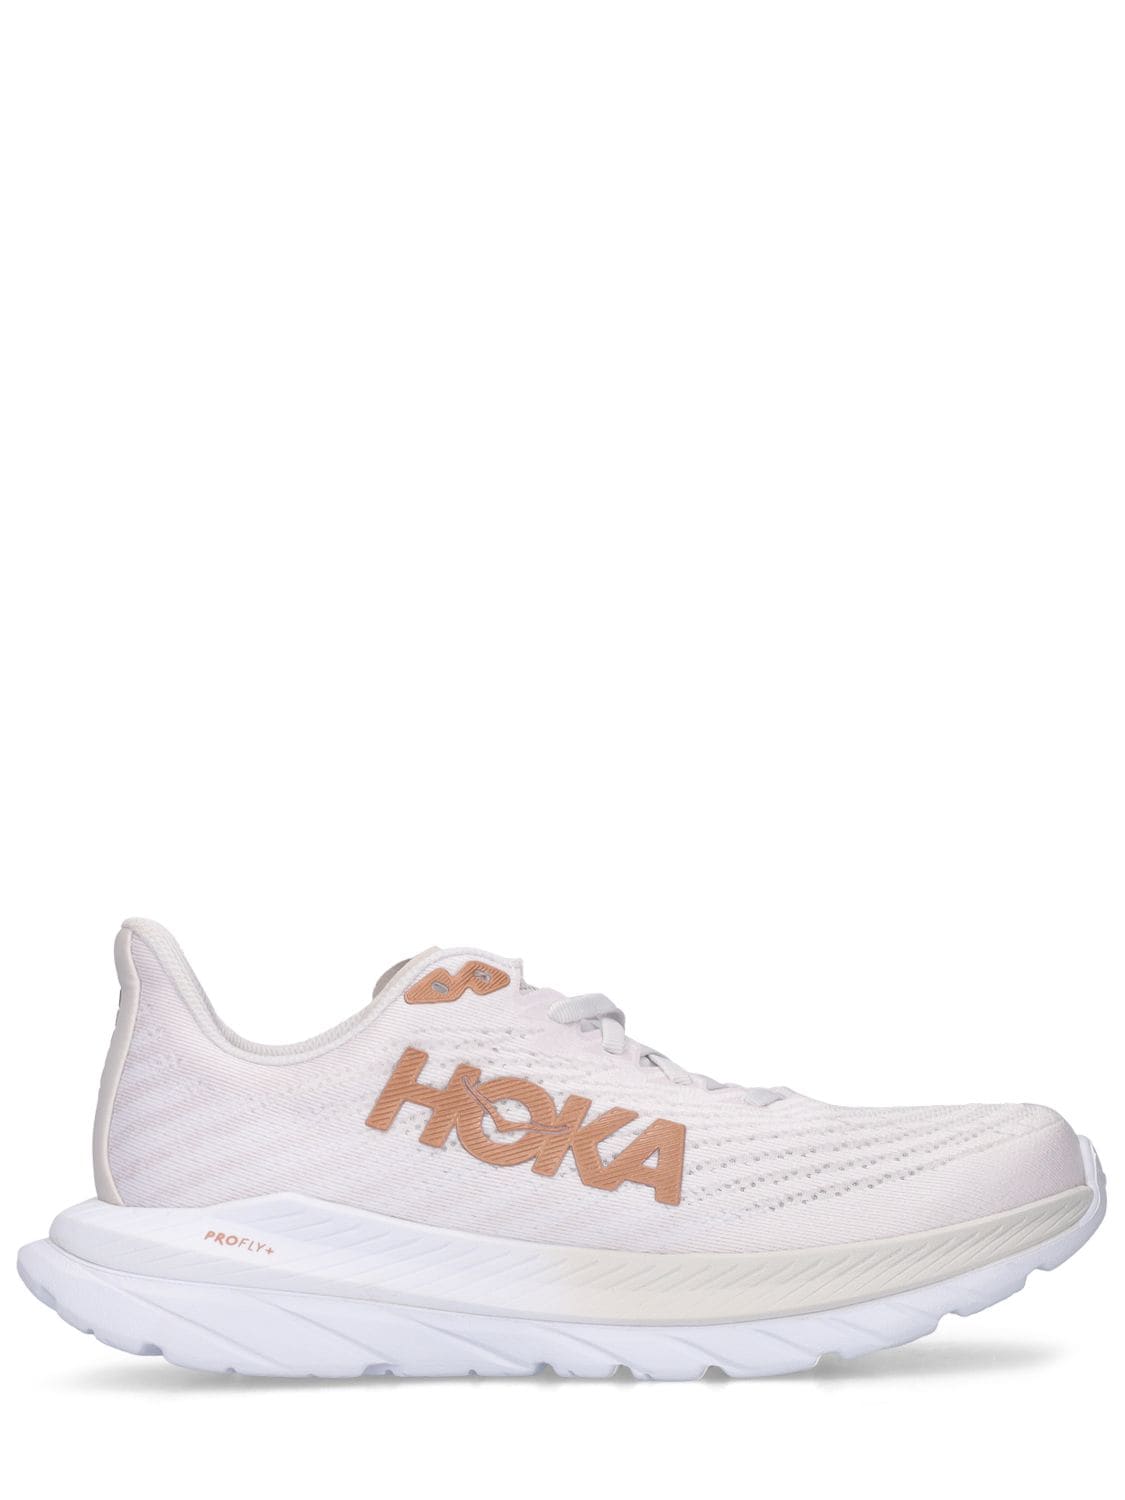 Hoka One One Mach 5 Sneakers In White